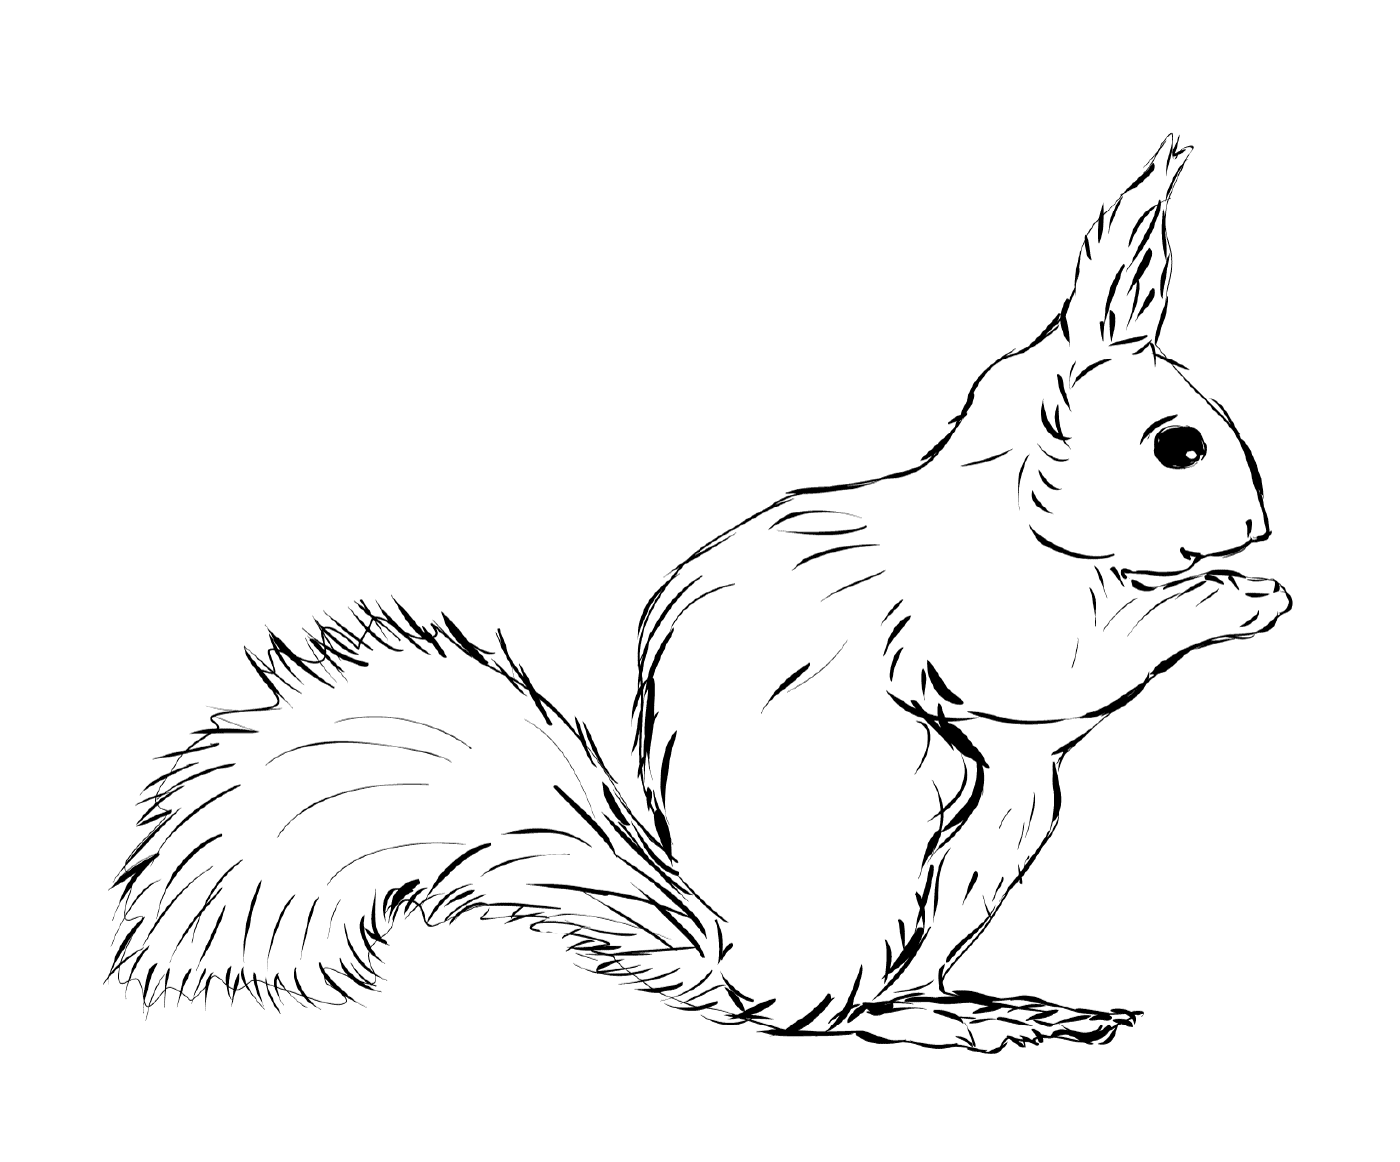  Realistisches Eichhörnchen, kleines Tier 